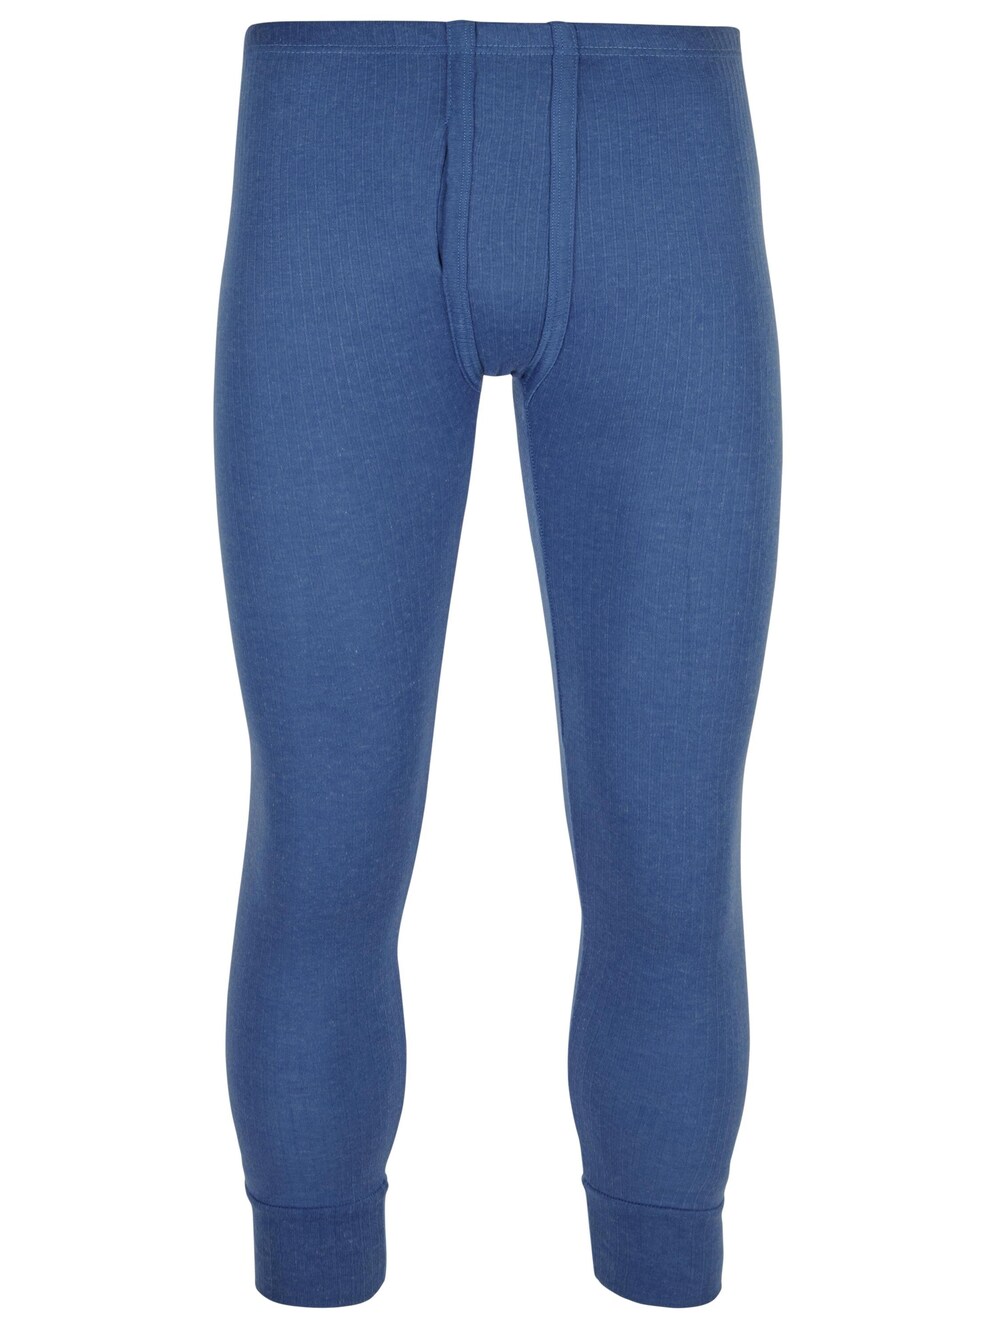 Узкие спортивные брюки Normani, синий узкие спортивные брюки normani синий